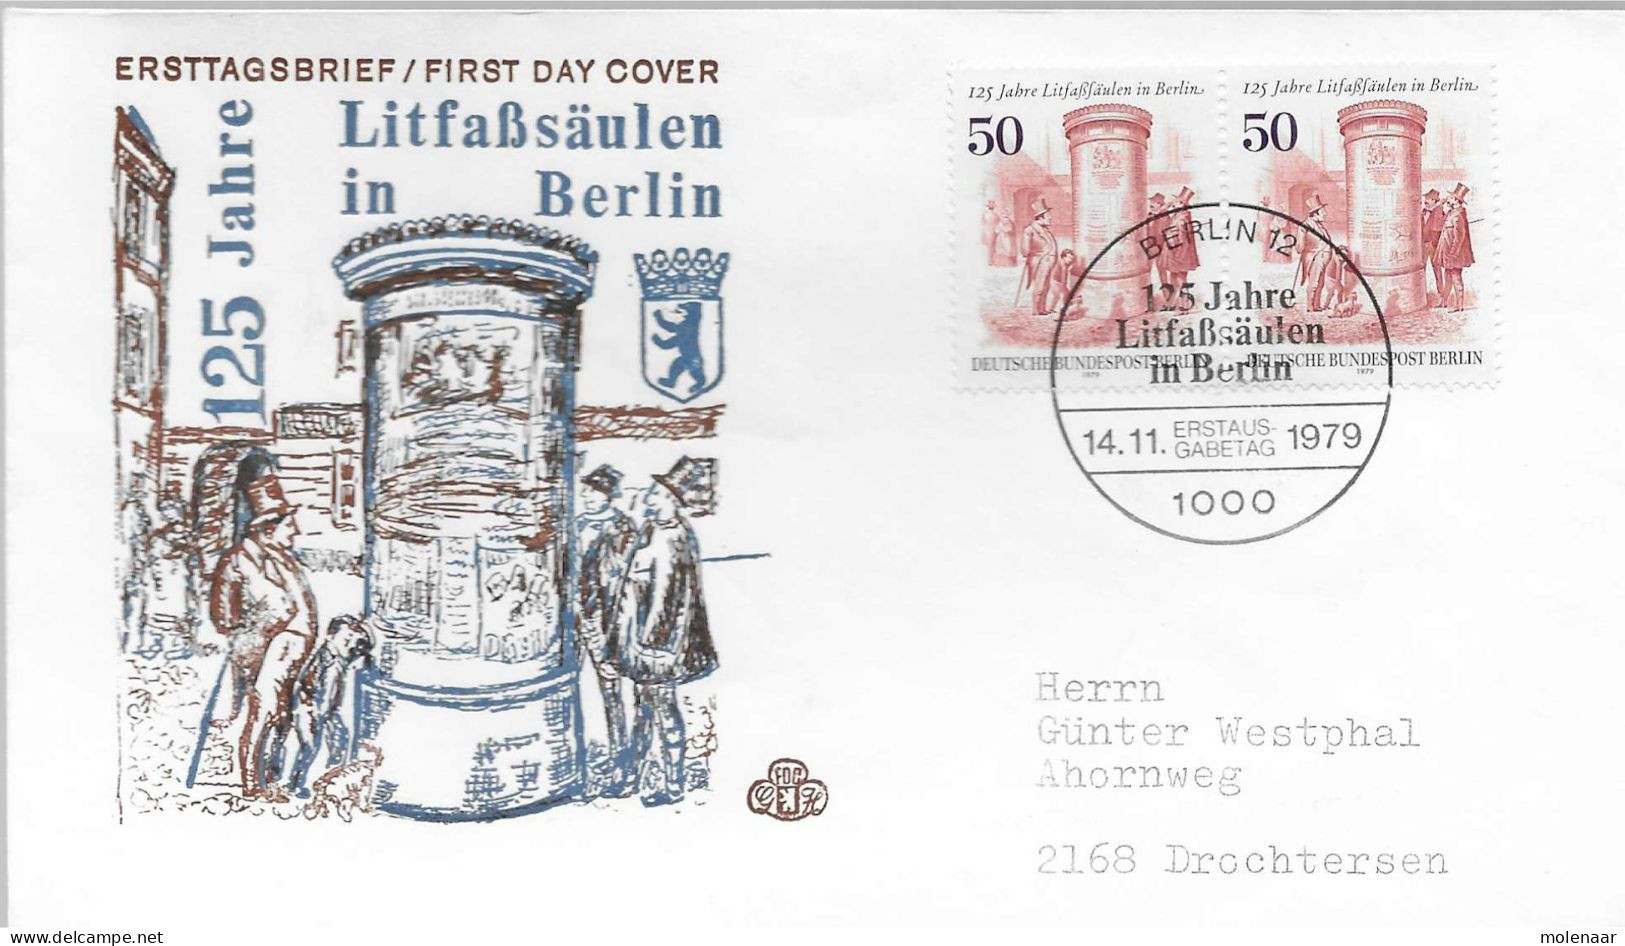 Postzegels > Europa > Duitsland > Berlijn > 1970-1979 > Brief Met 2x No. 812 (17210) - Covers & Documents